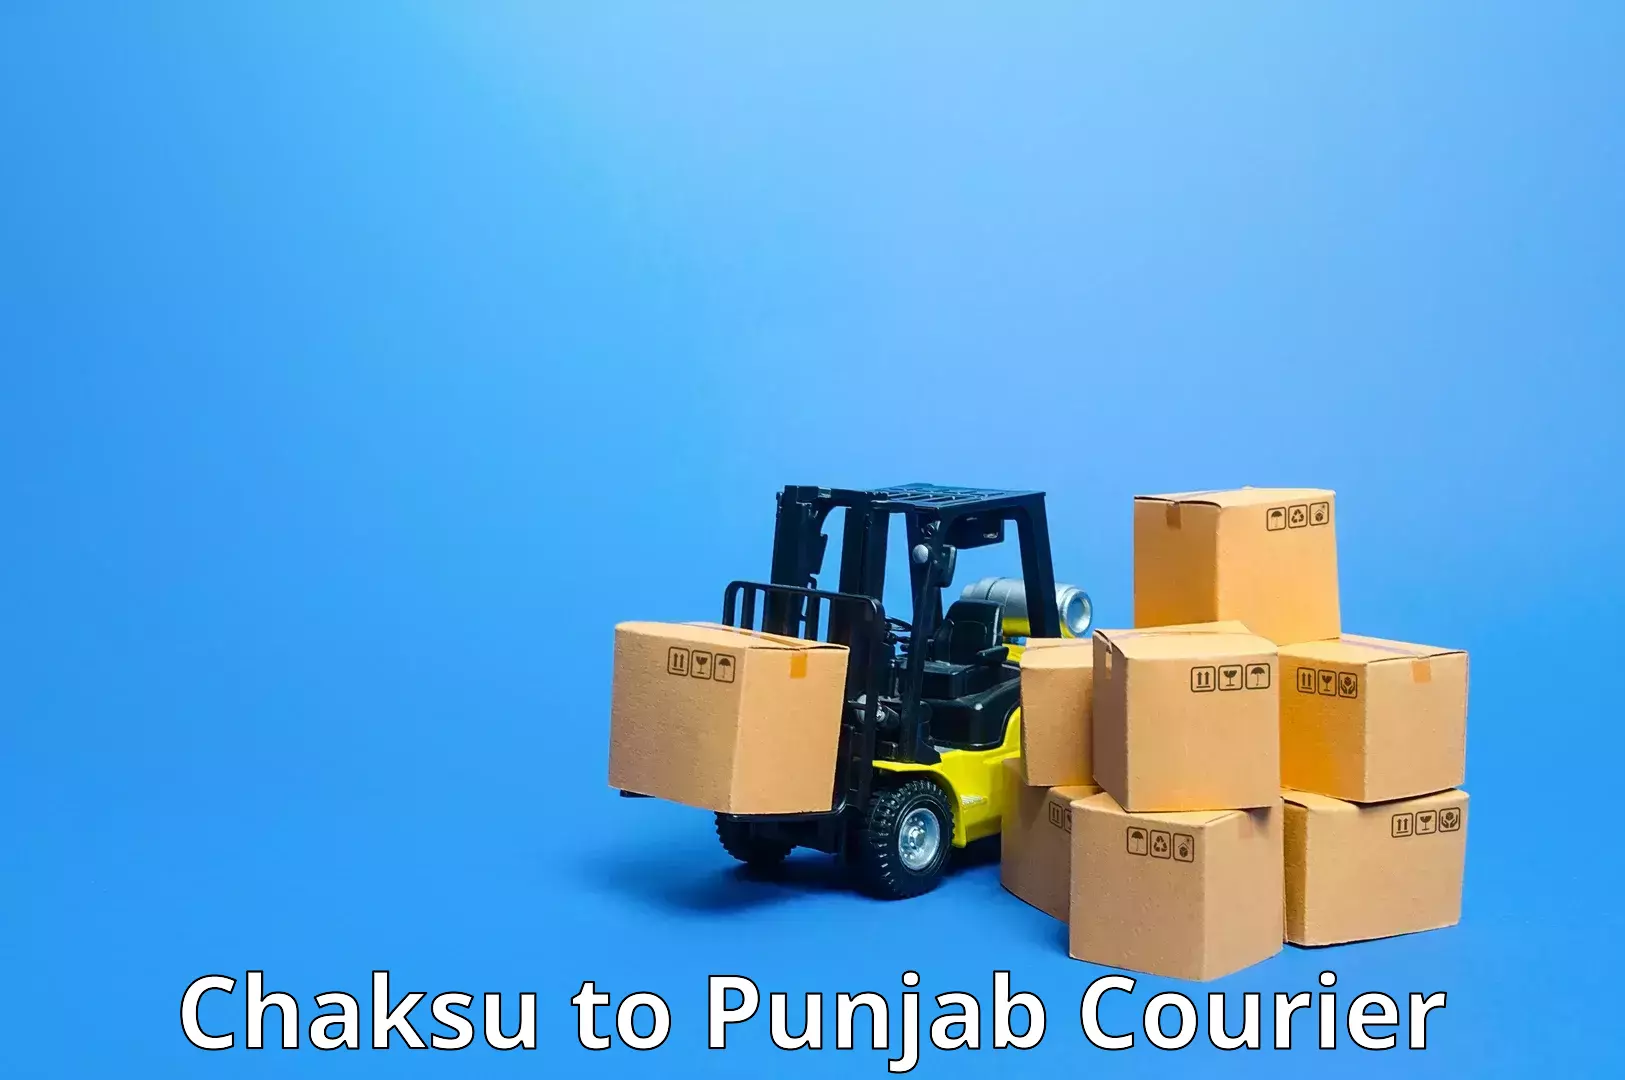 Modern courier technology Chaksu to Punjab